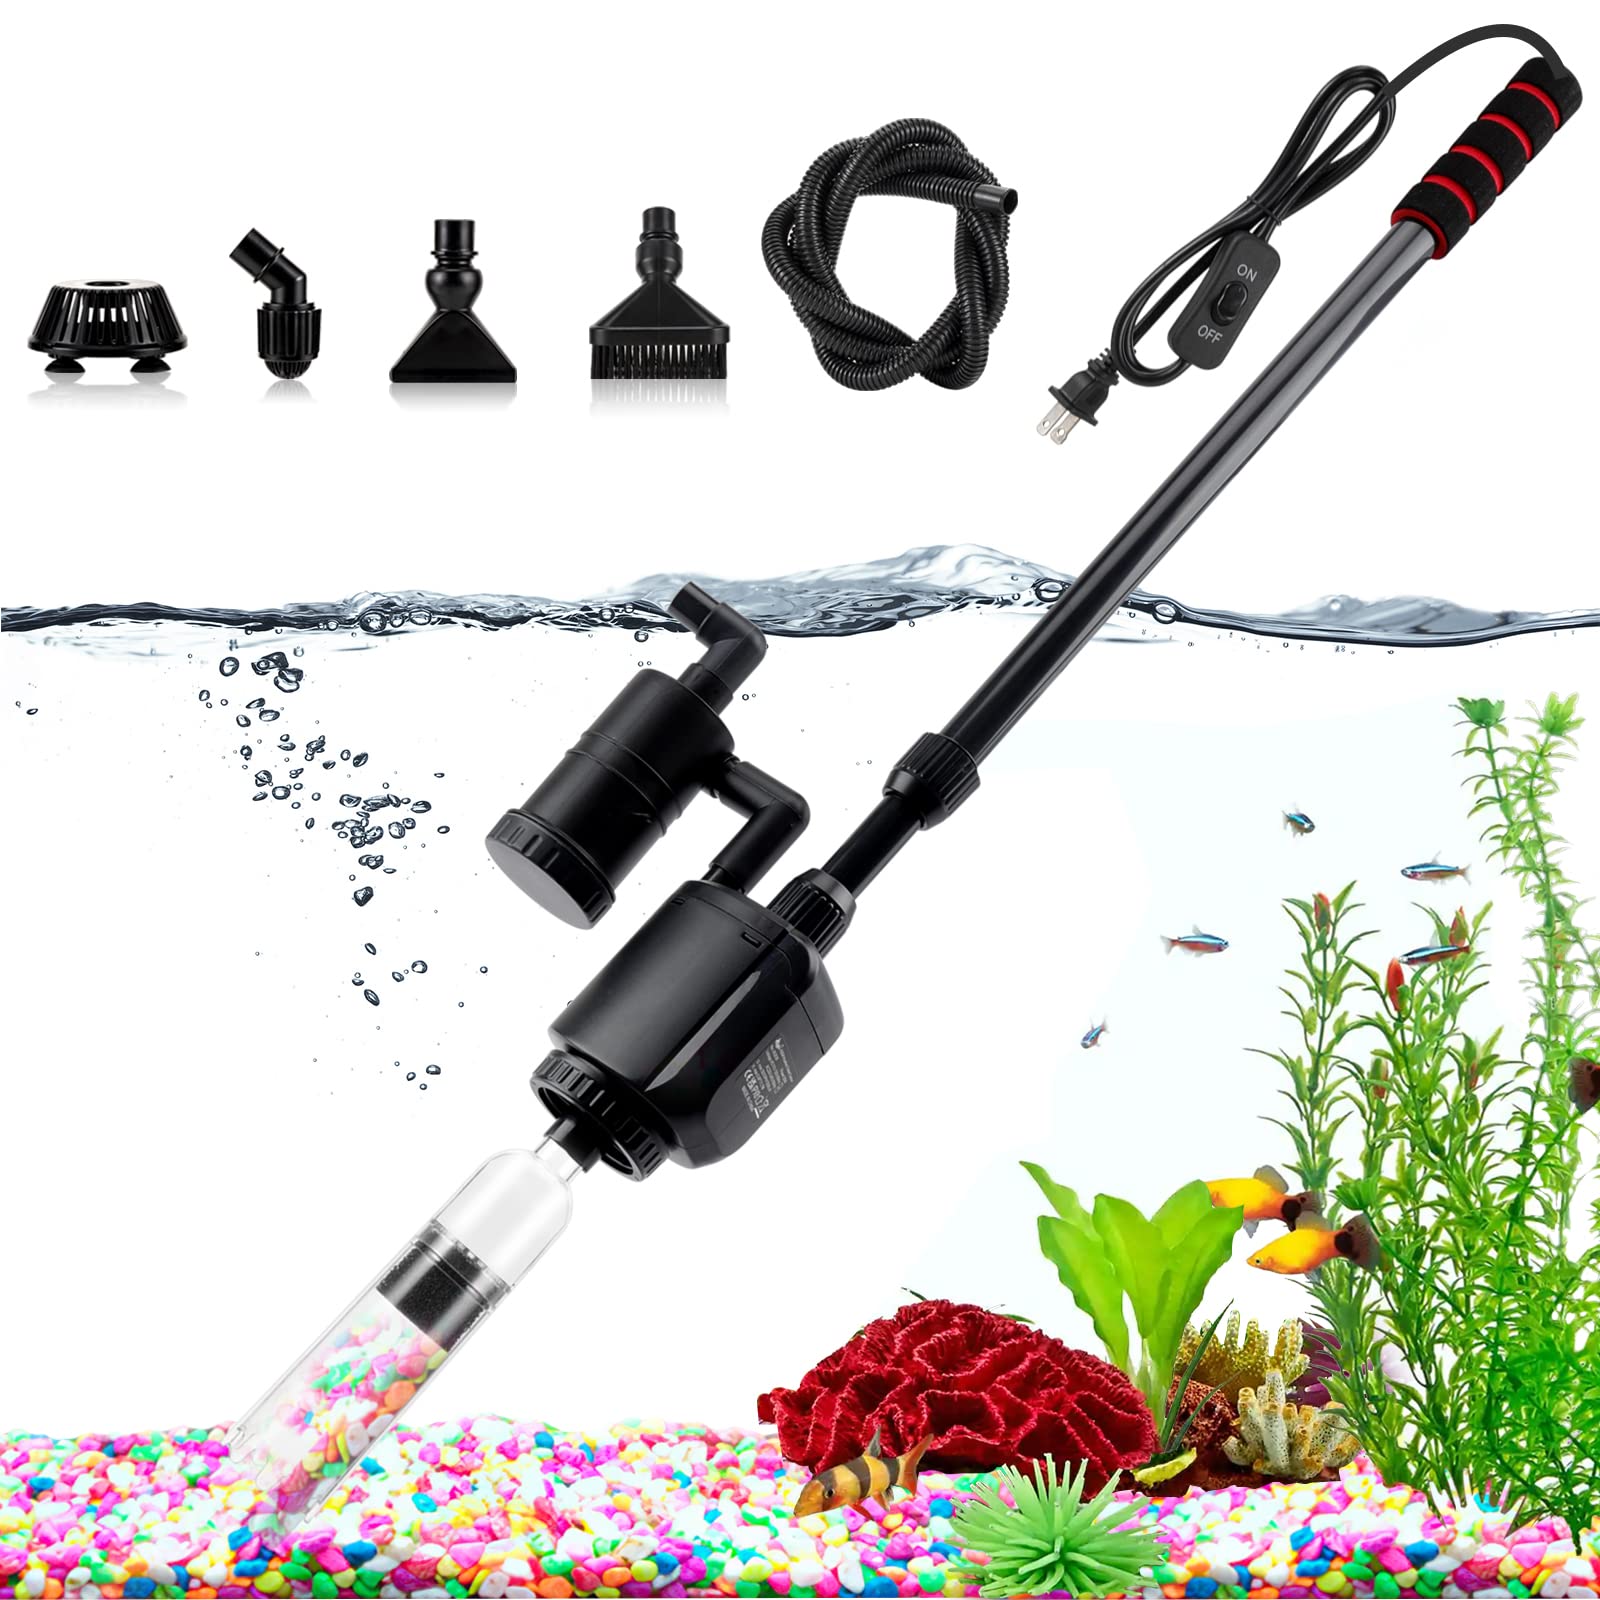 AQQA Electric Aquarium Gravel Cleaner, 6 in 1 Automatic Fish Tank Cleaning  Tools Gravel Vacuum for